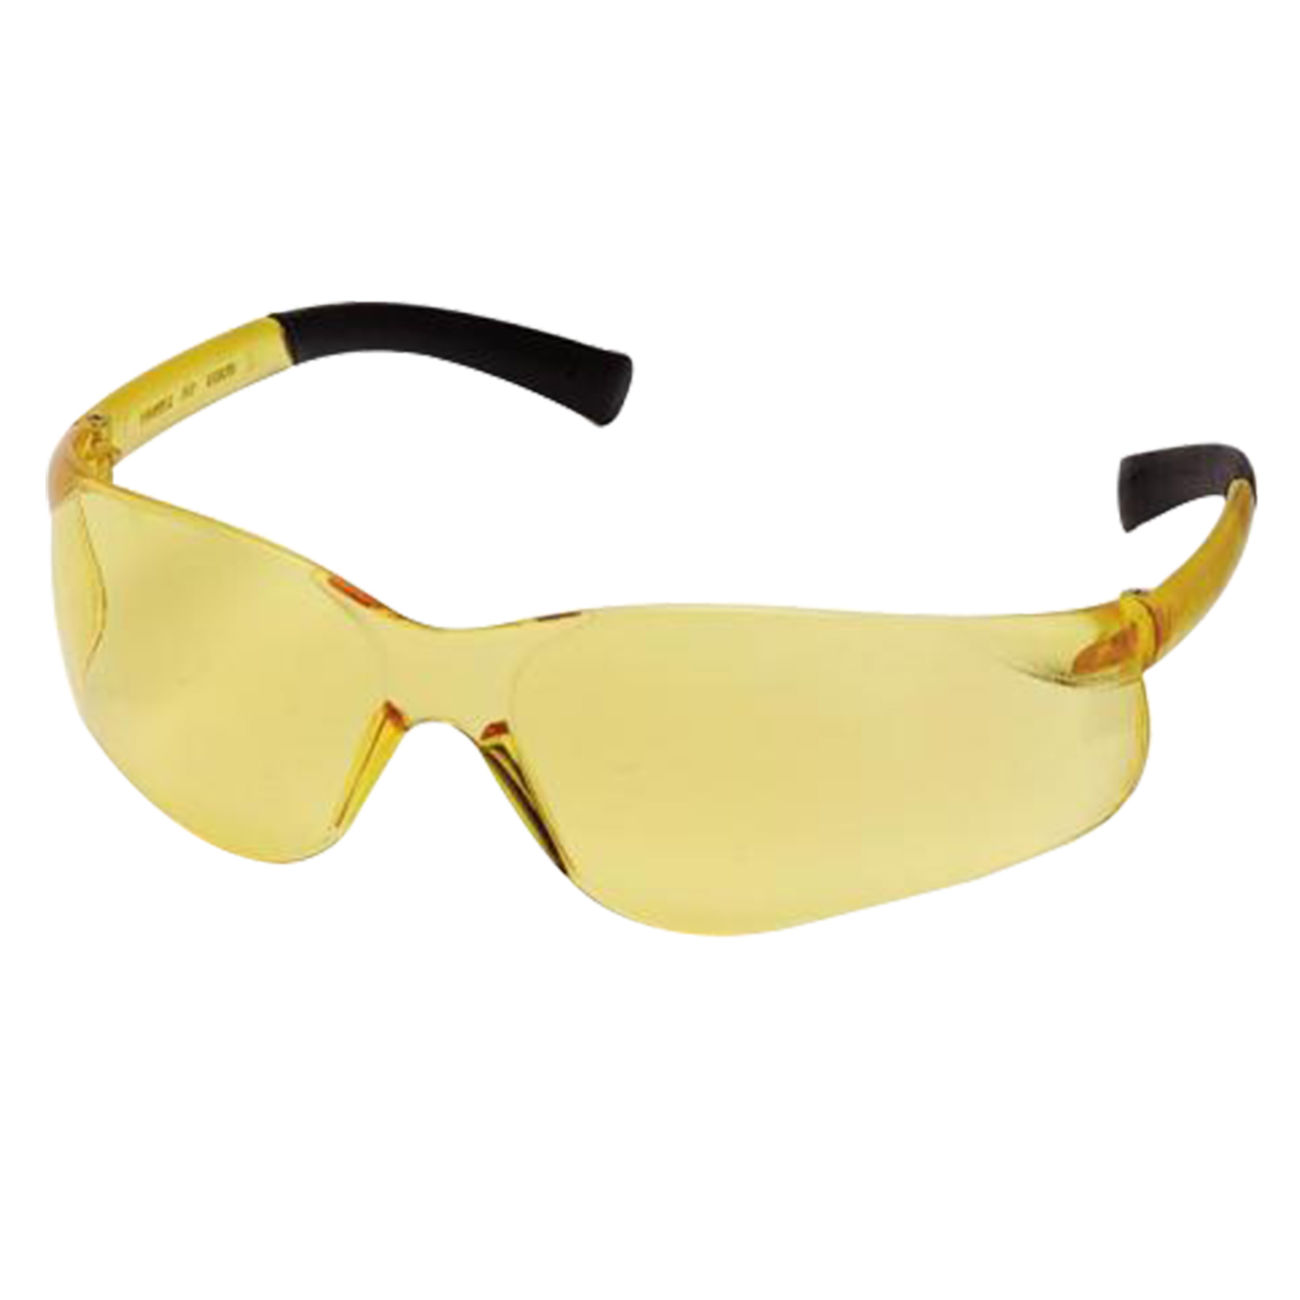 Pyramex Brille Mini Ztek gelb